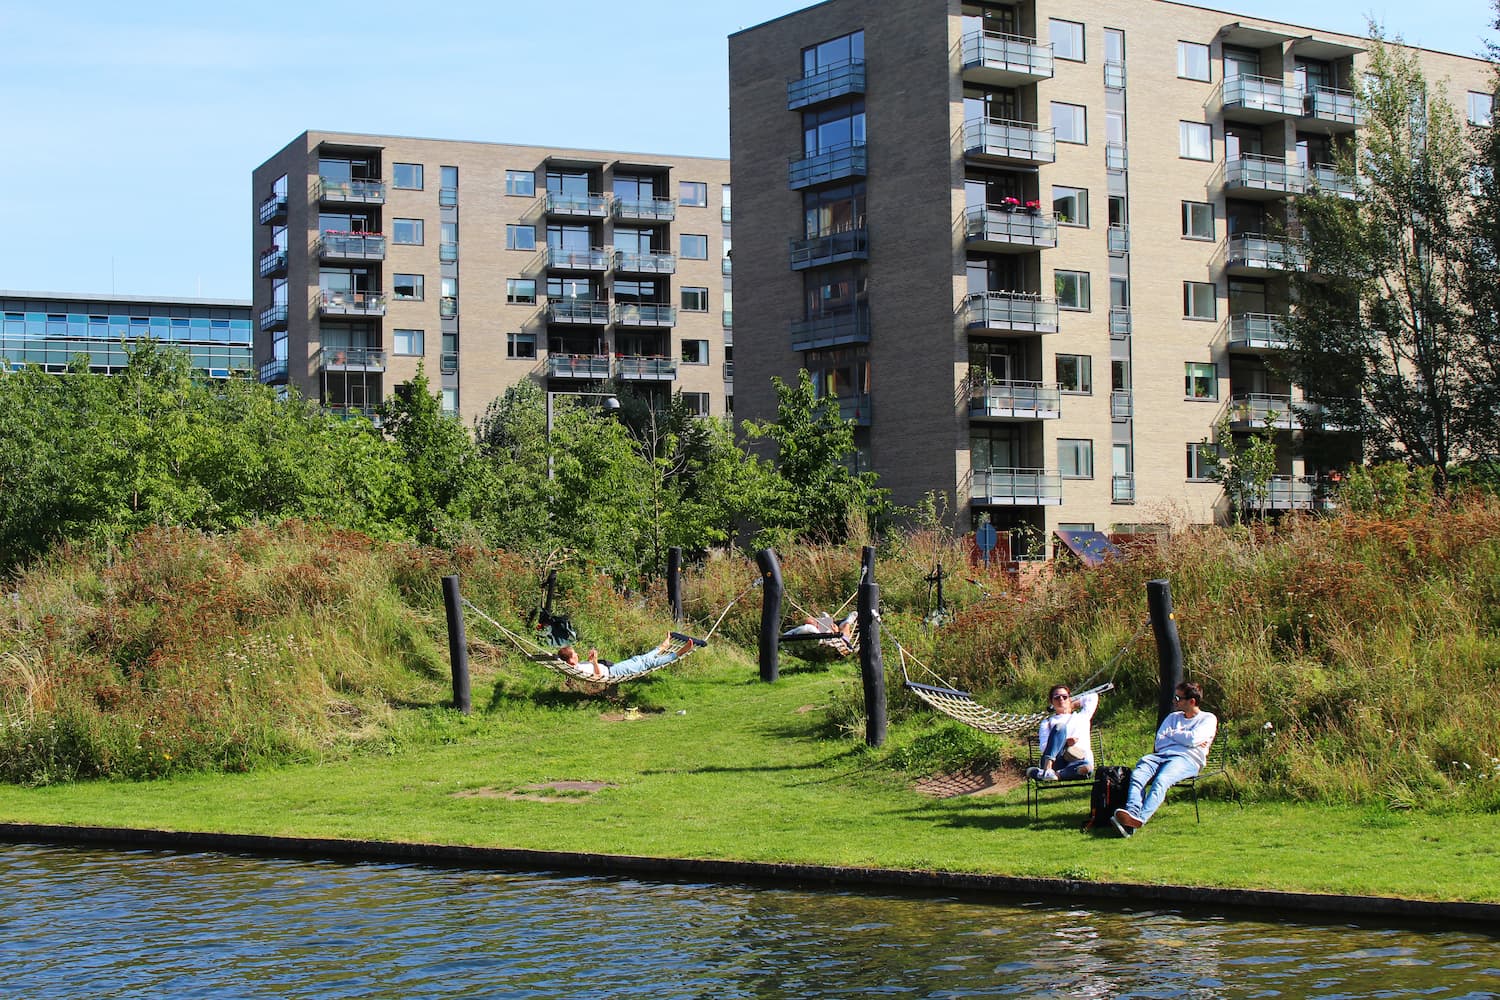 Grundejerforeningen Ørestad Nord har udviklet parken Grønningen siden 2012. I den nordlige del af parken ved Tietgenkollegiet finder du blandt andet en "hængekøje-ø".